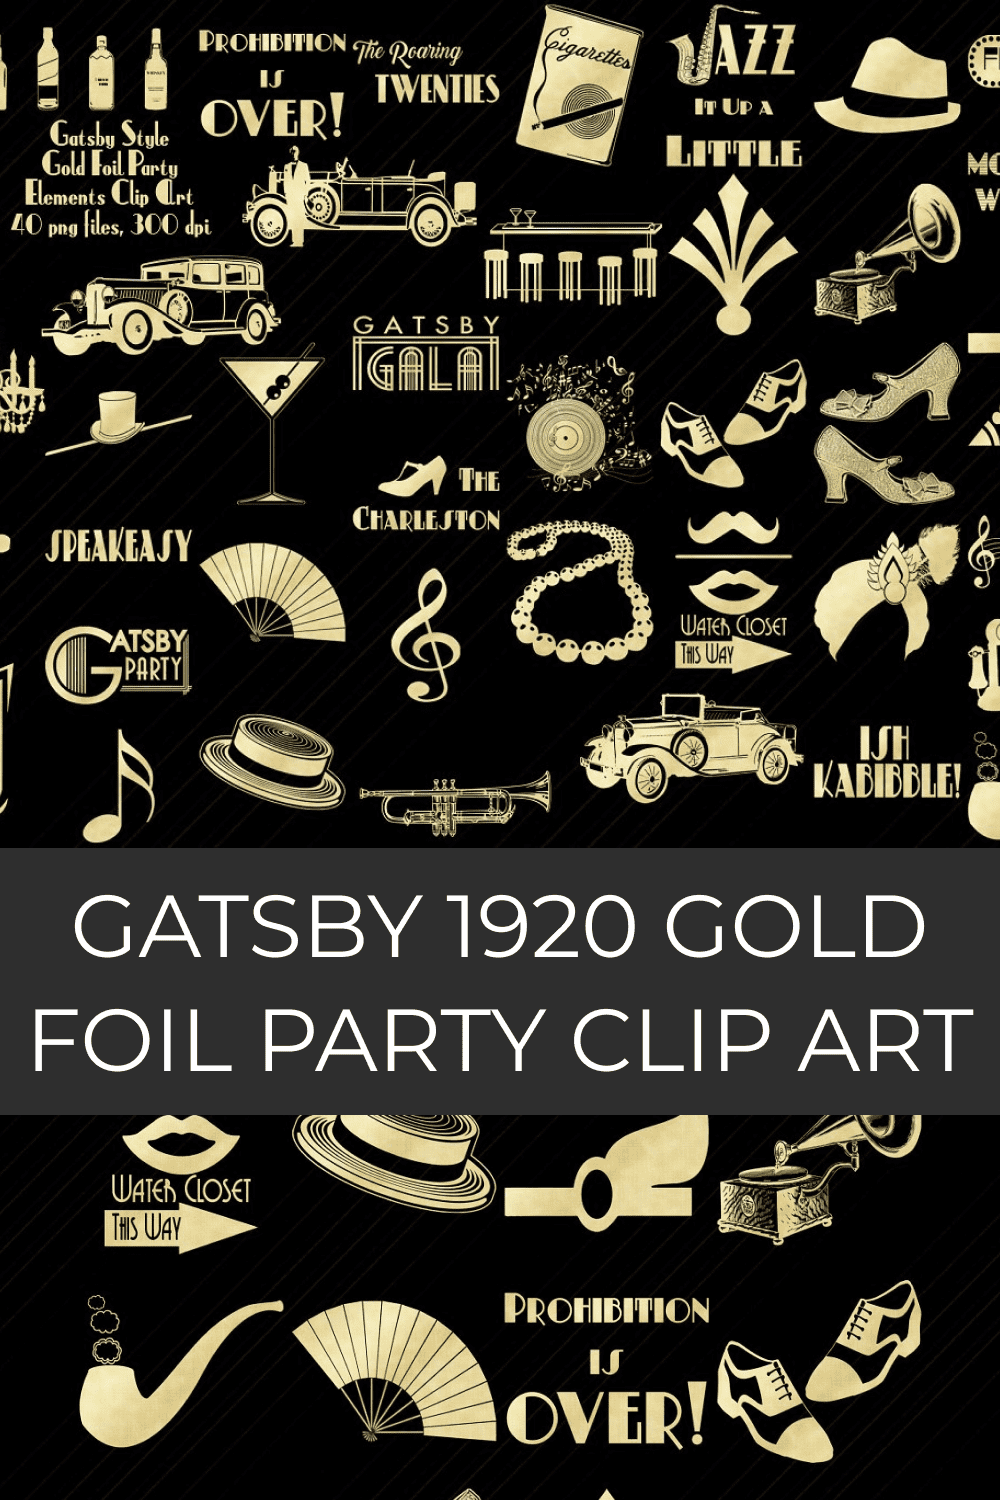 gatsby 1920 gold foil party clip art pinterest image.